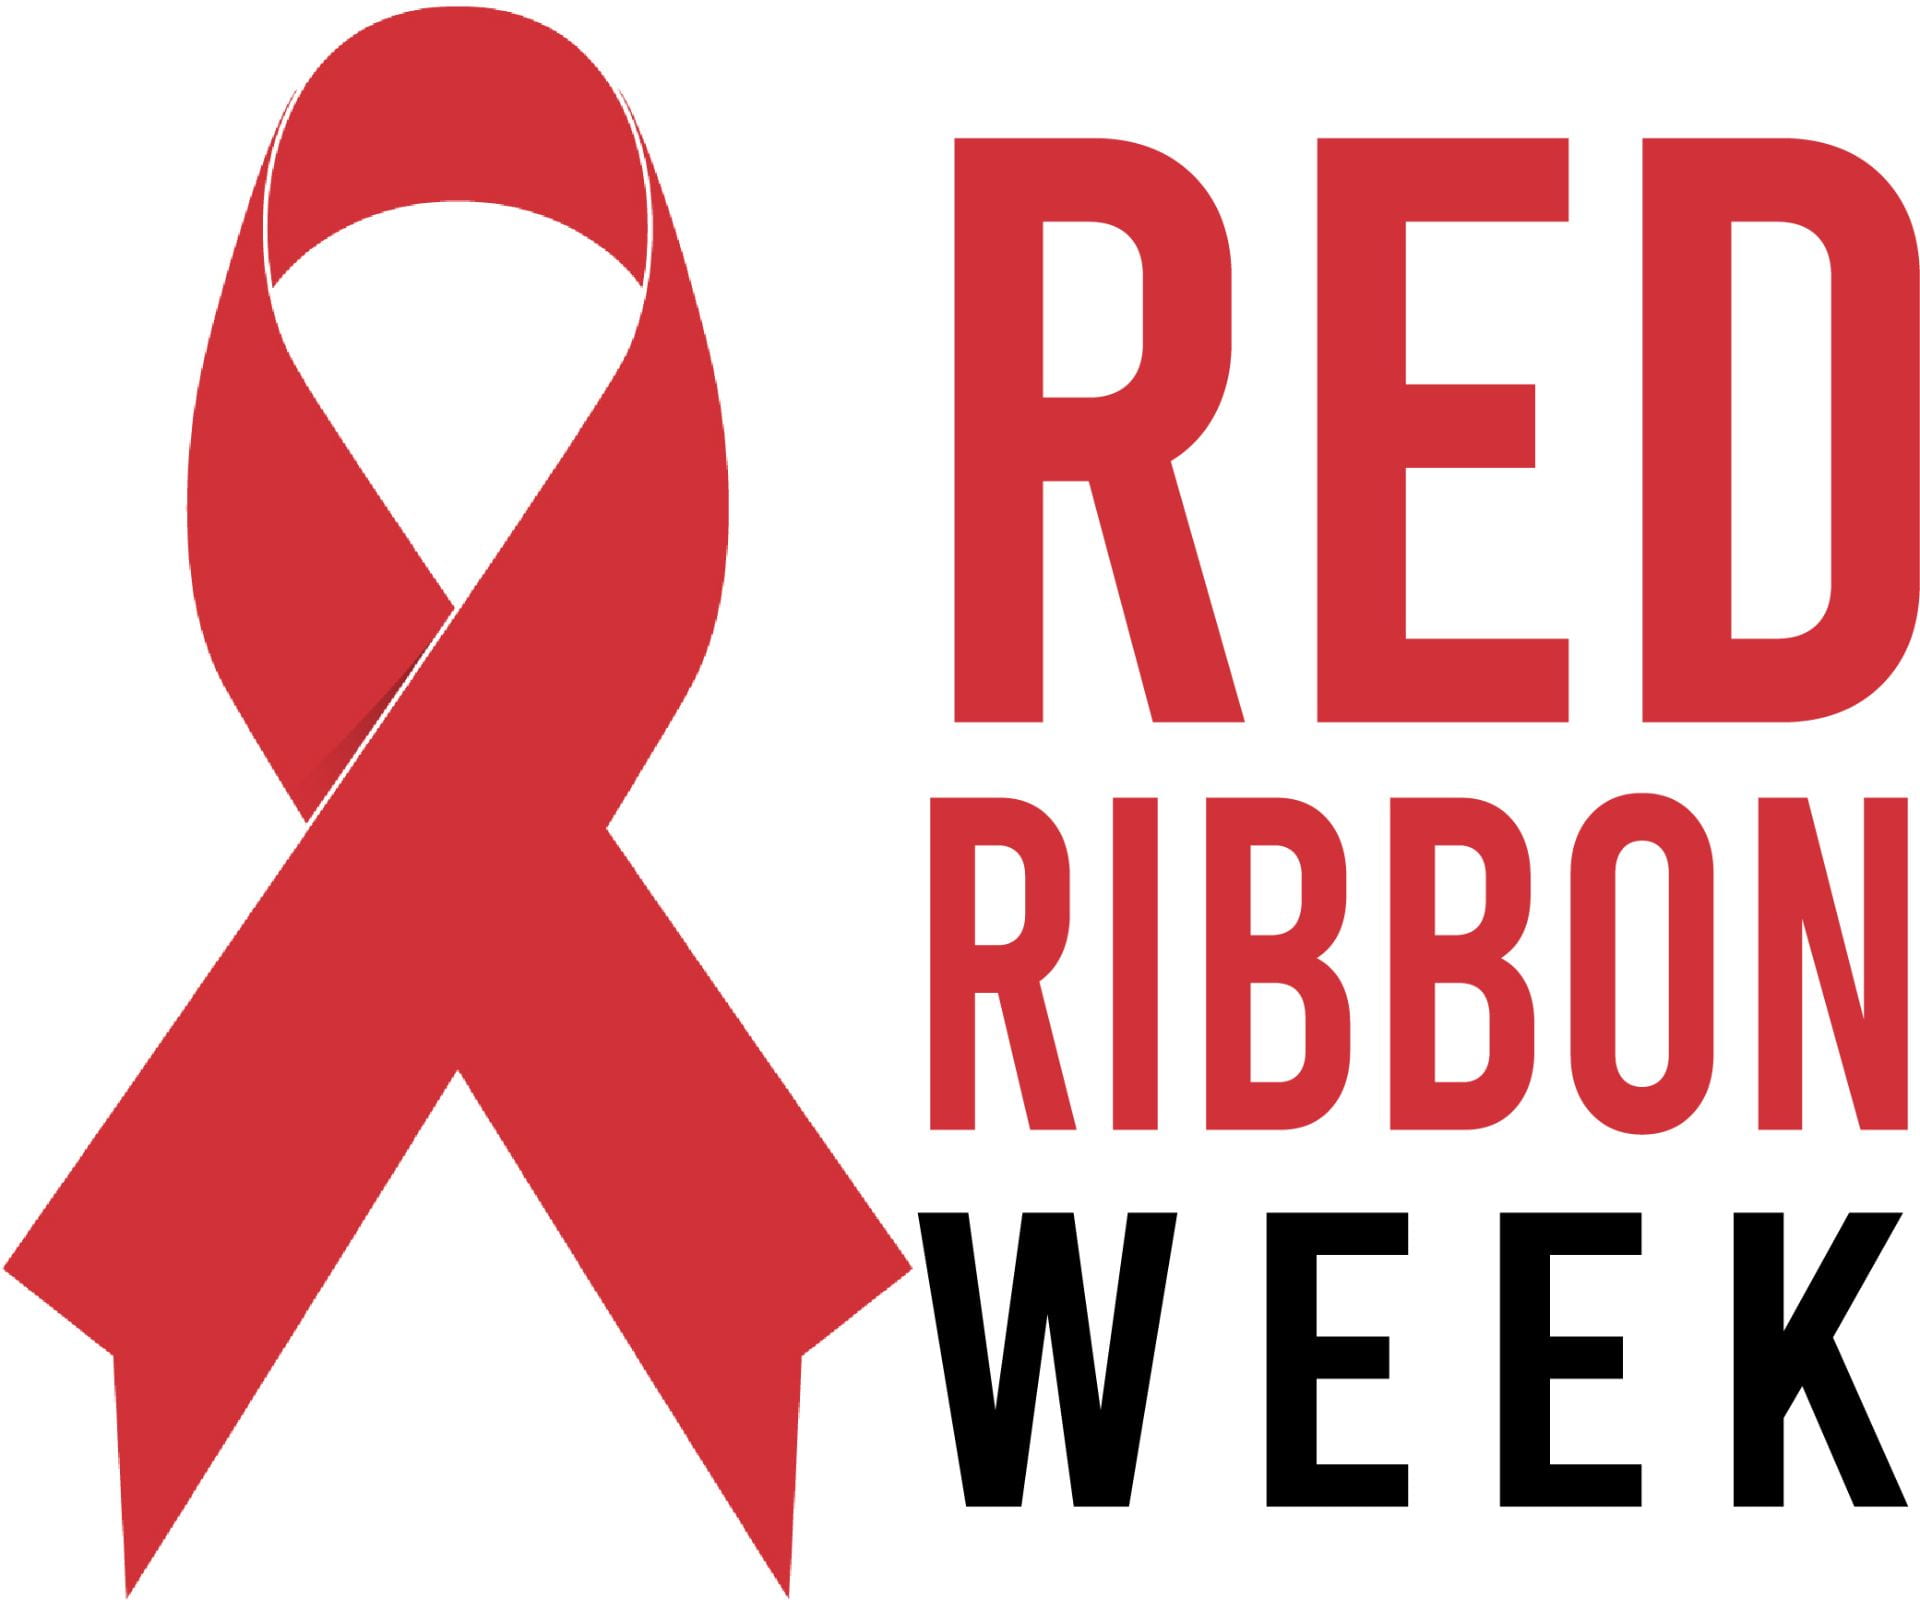 10/26-10/30: Red Ribbon Week